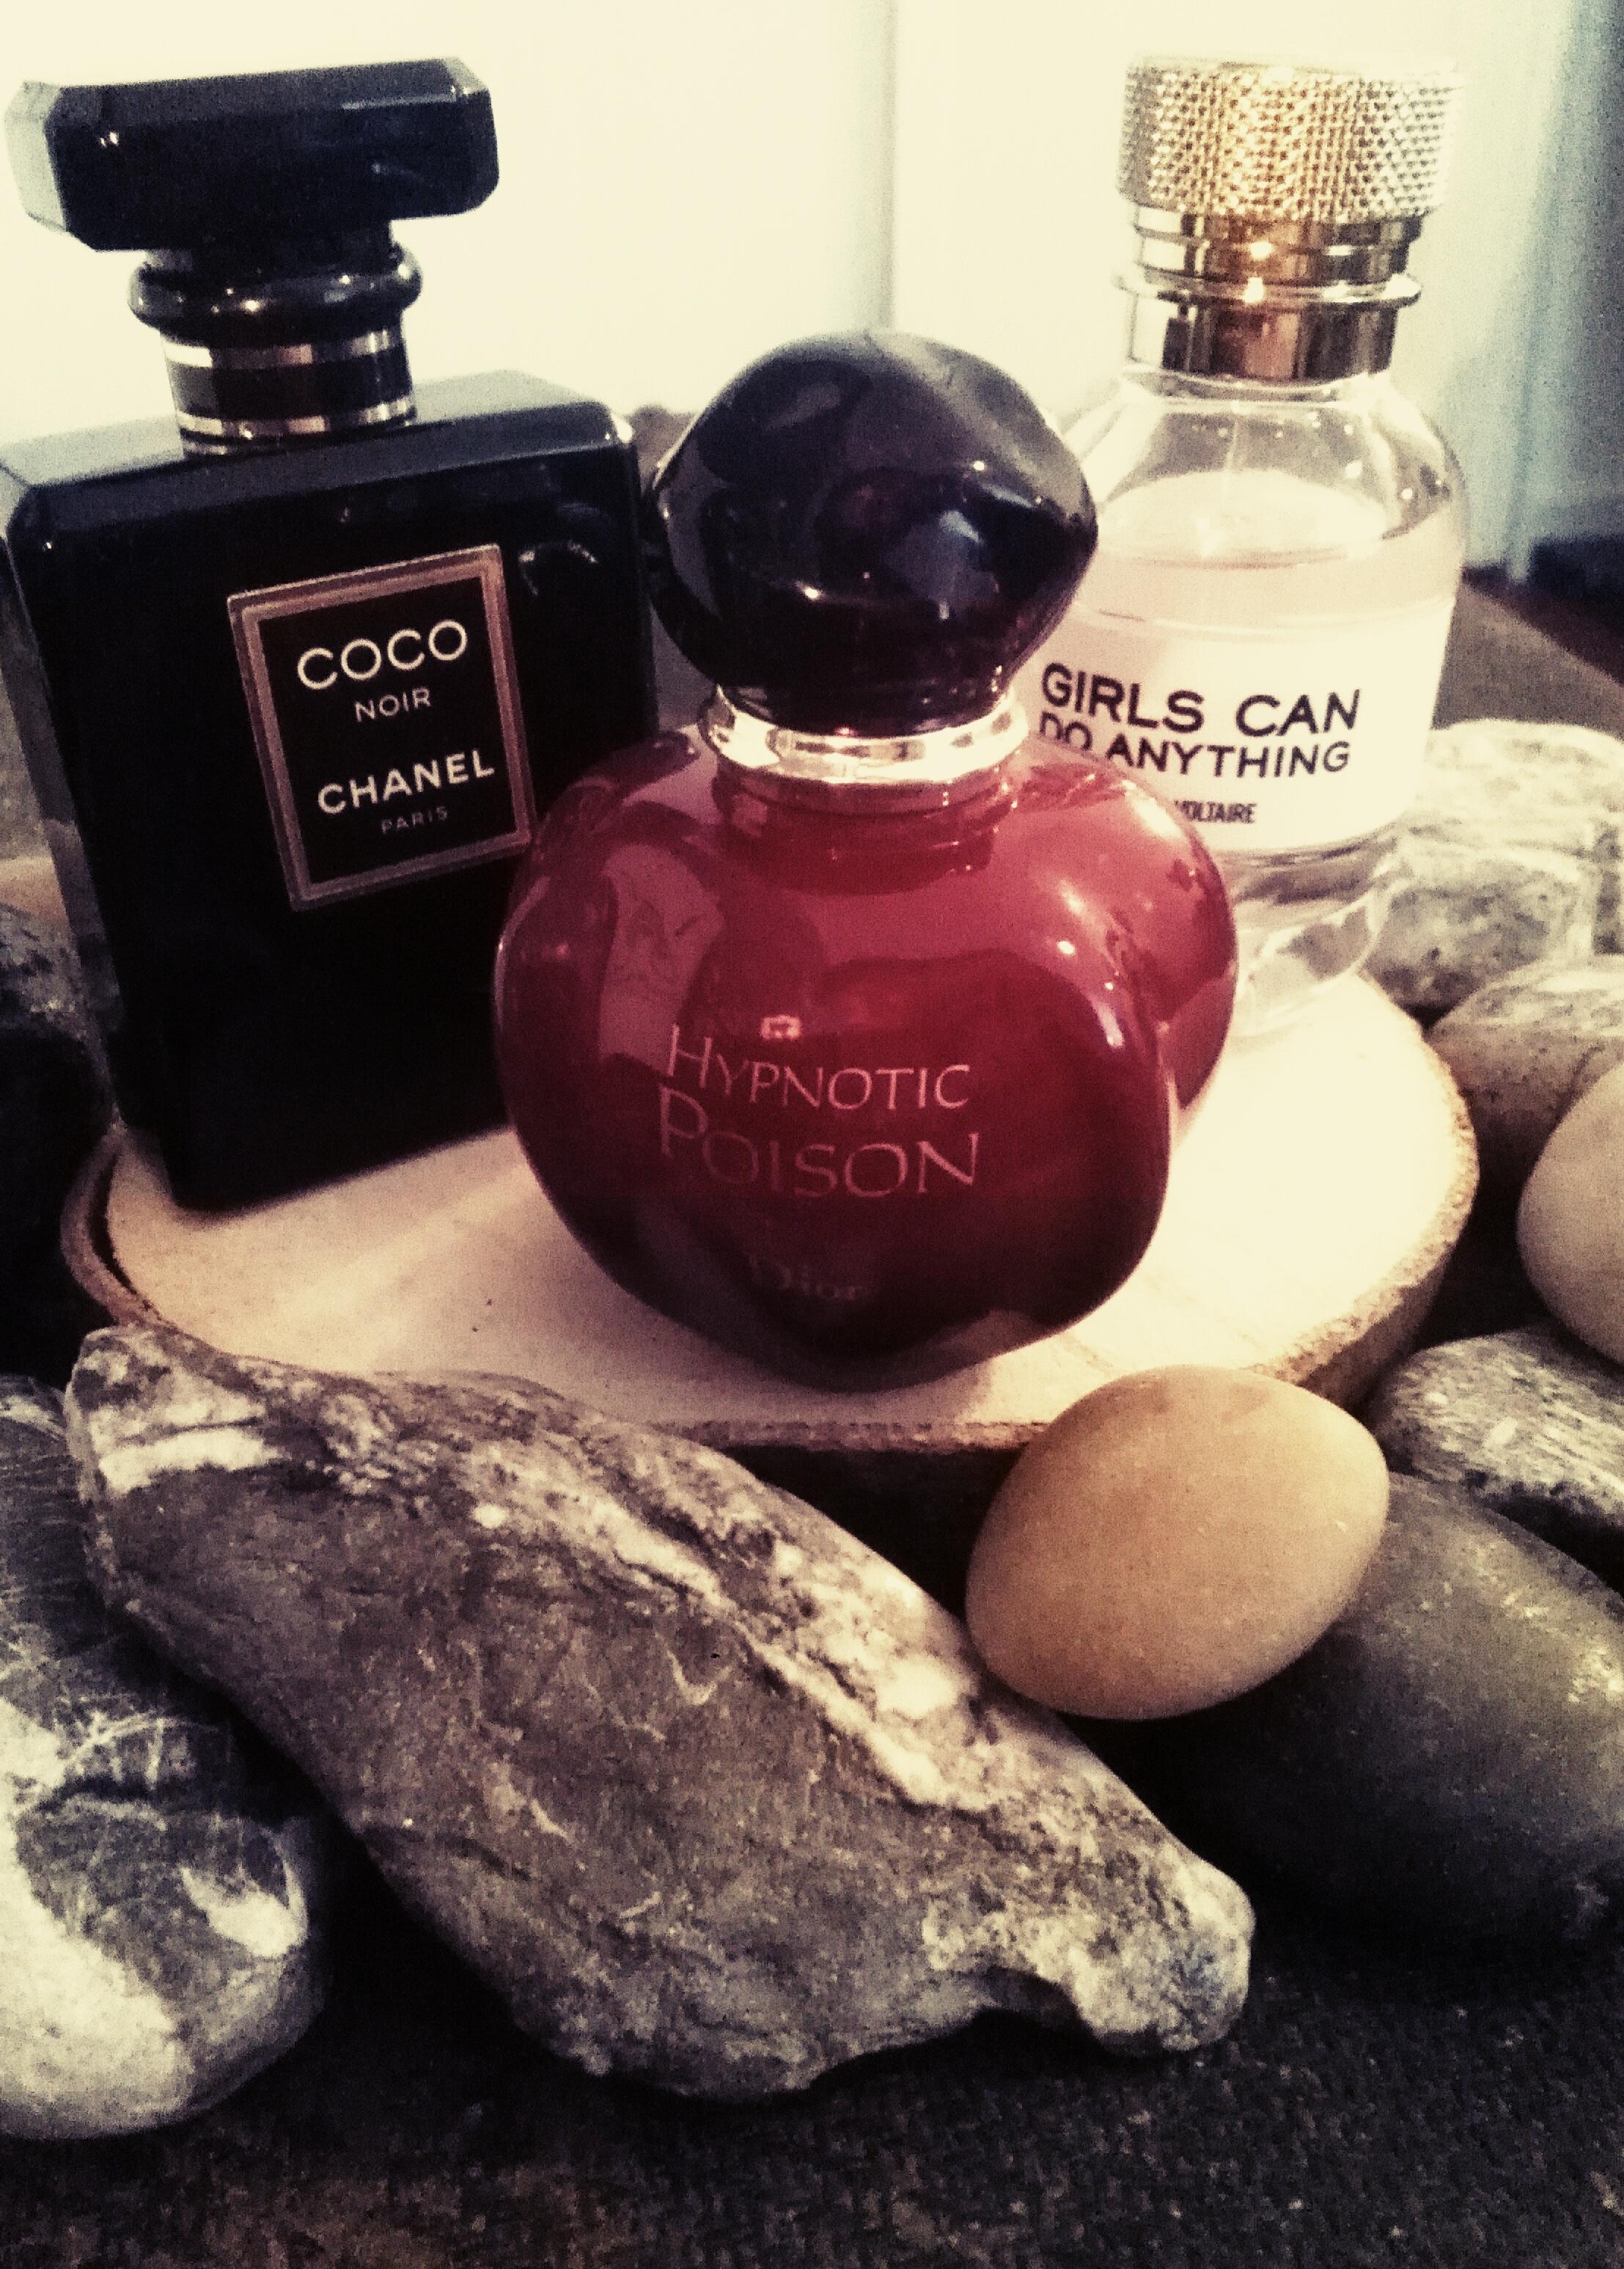 Meine Lieblingsparfums <3
#parfum #beautychallenge